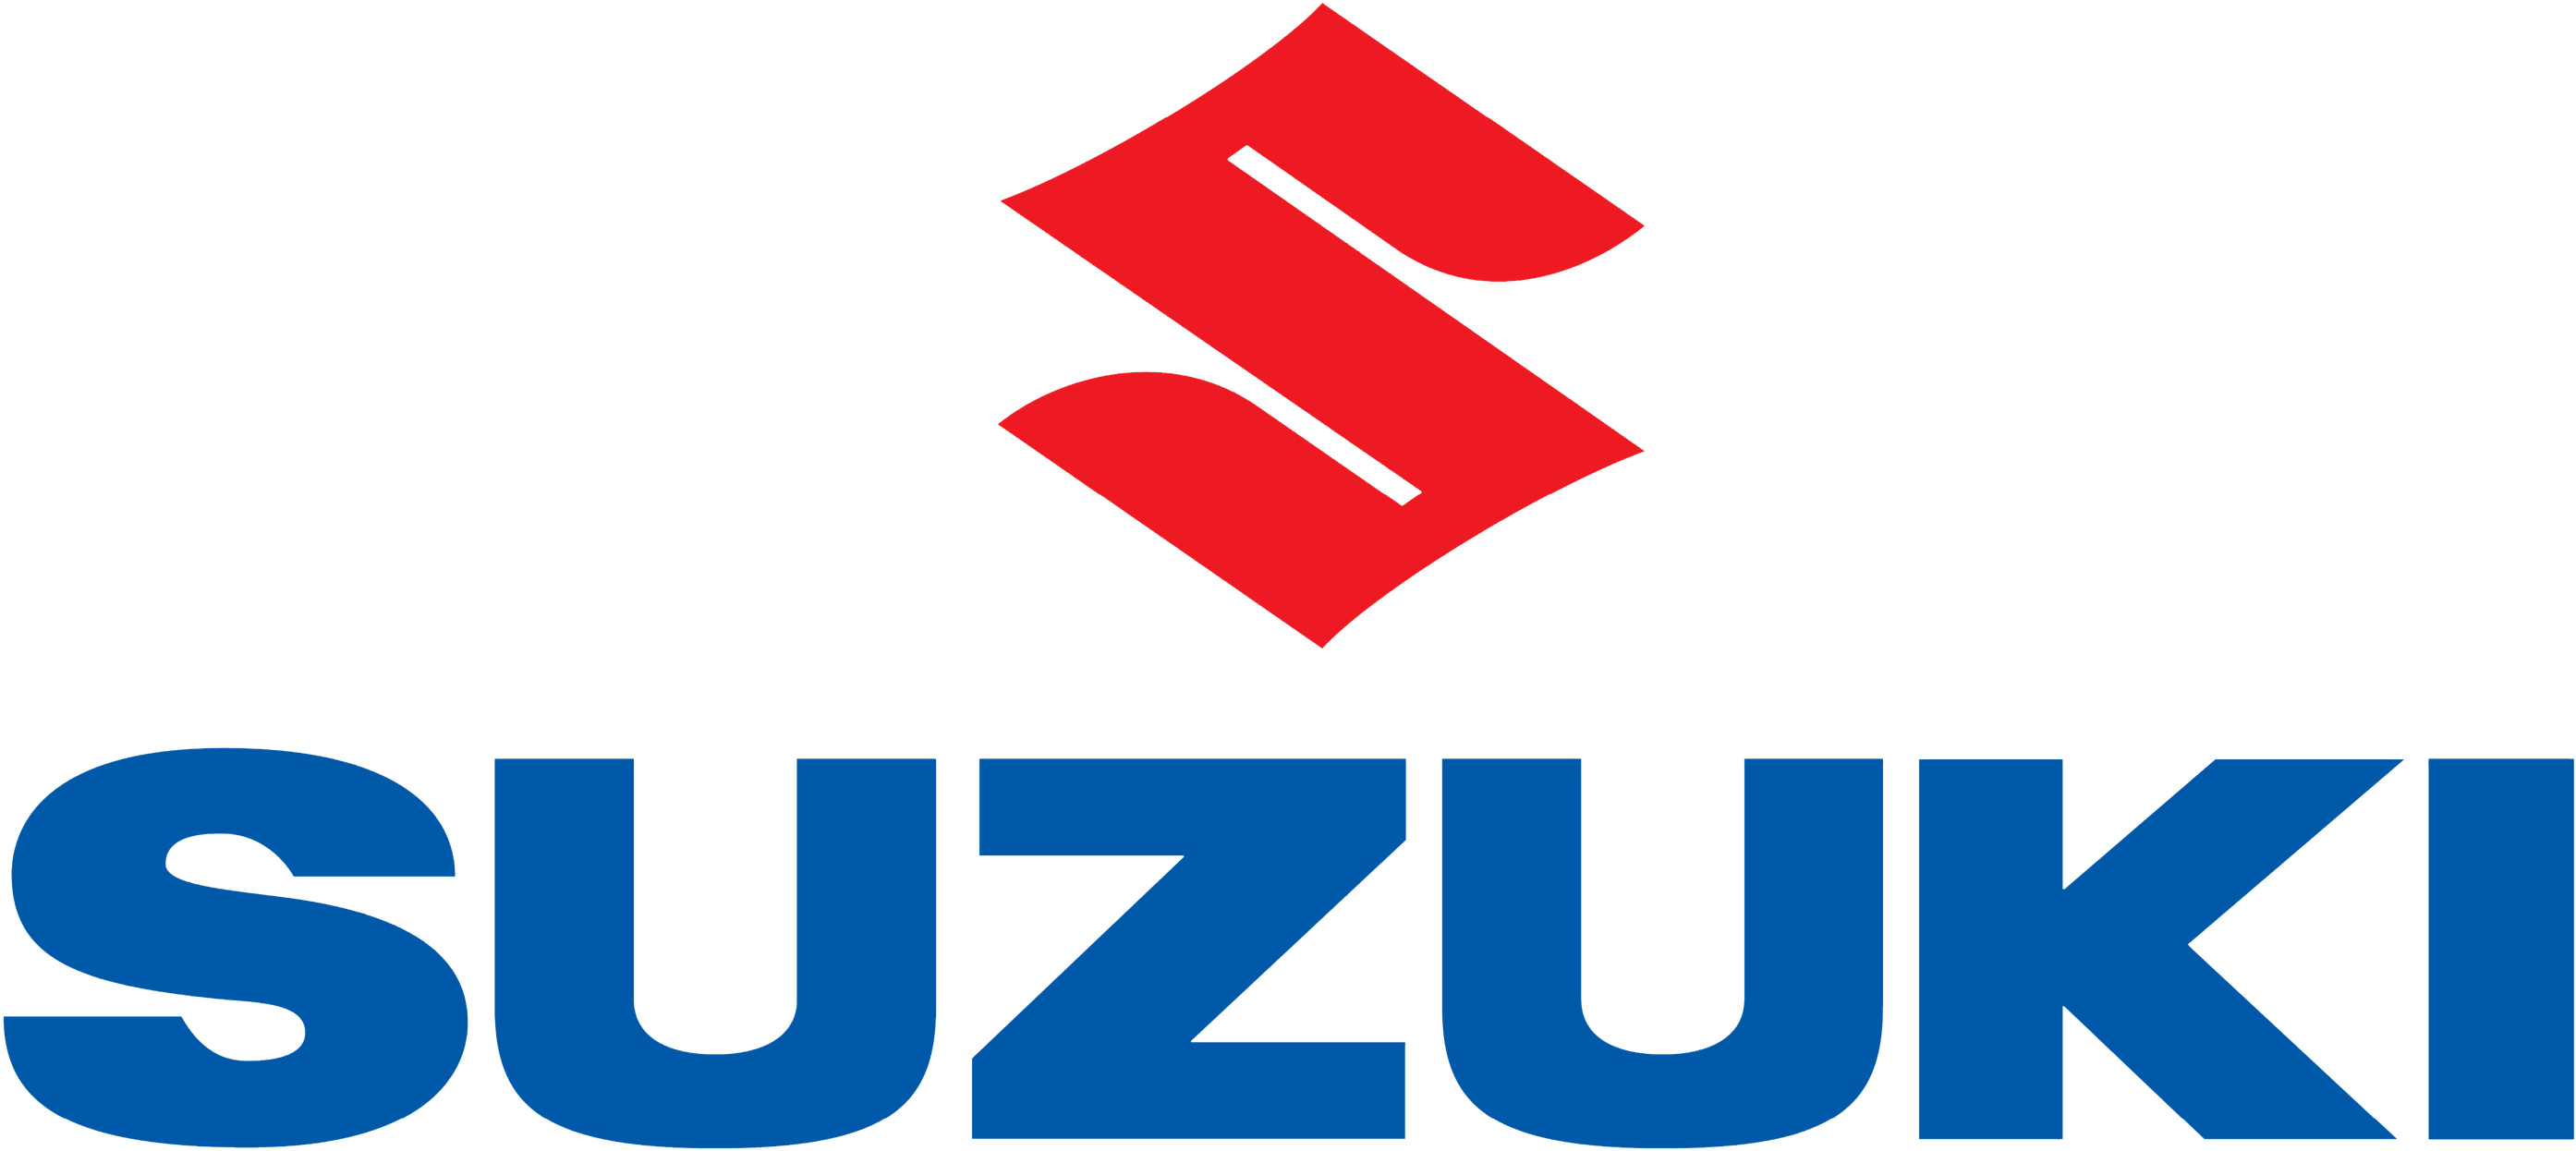 Logo Suzuki Free Transparent Image HQ PNG Image